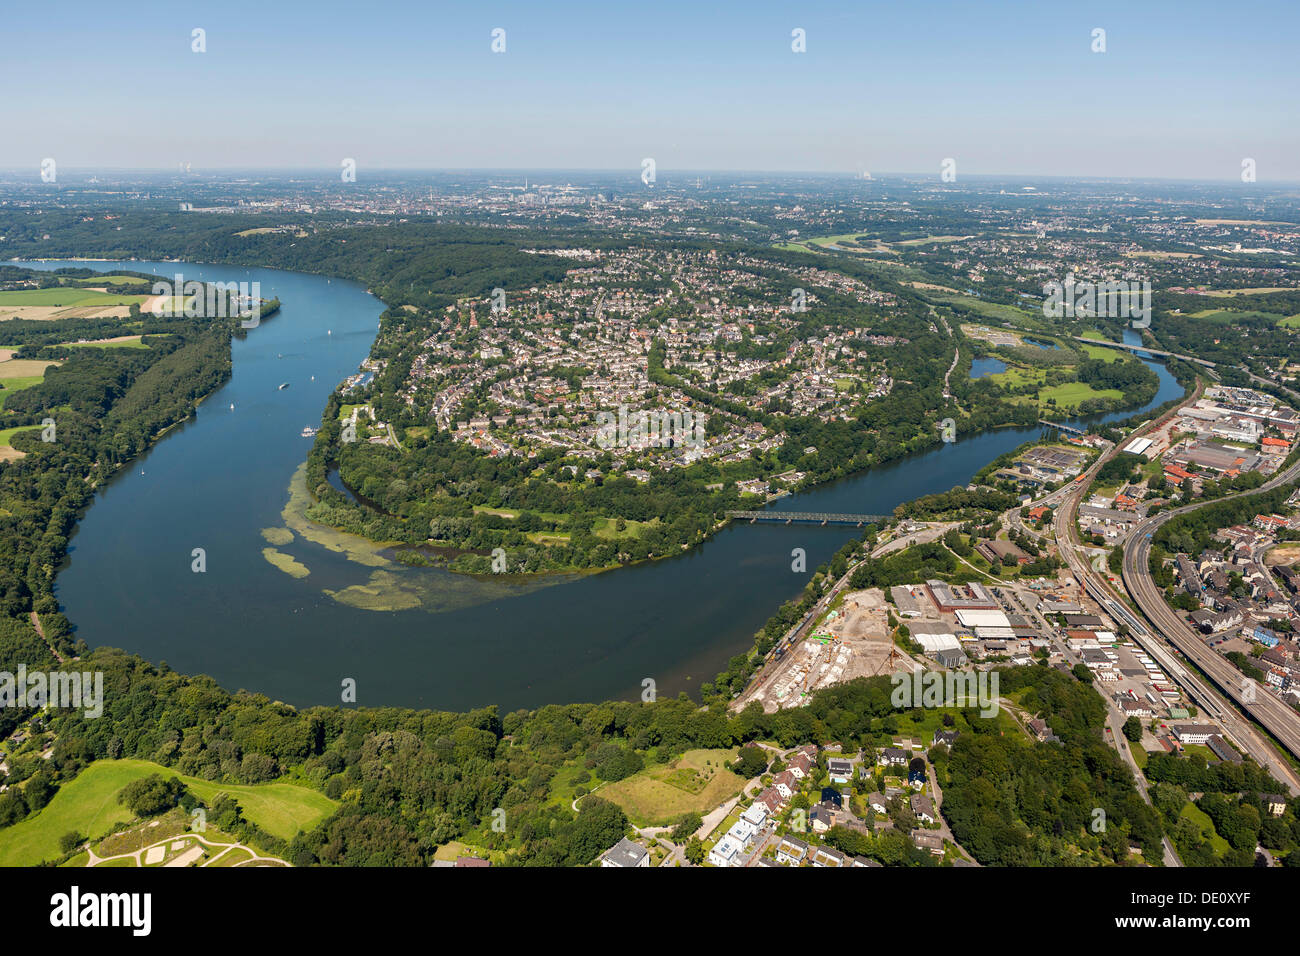 Aerial view of Kupferdreh, loop of the Ruhr river, Lake Baldeneysee, Essen, Ruhr region, North Rhine-Westphalia Stock Photo